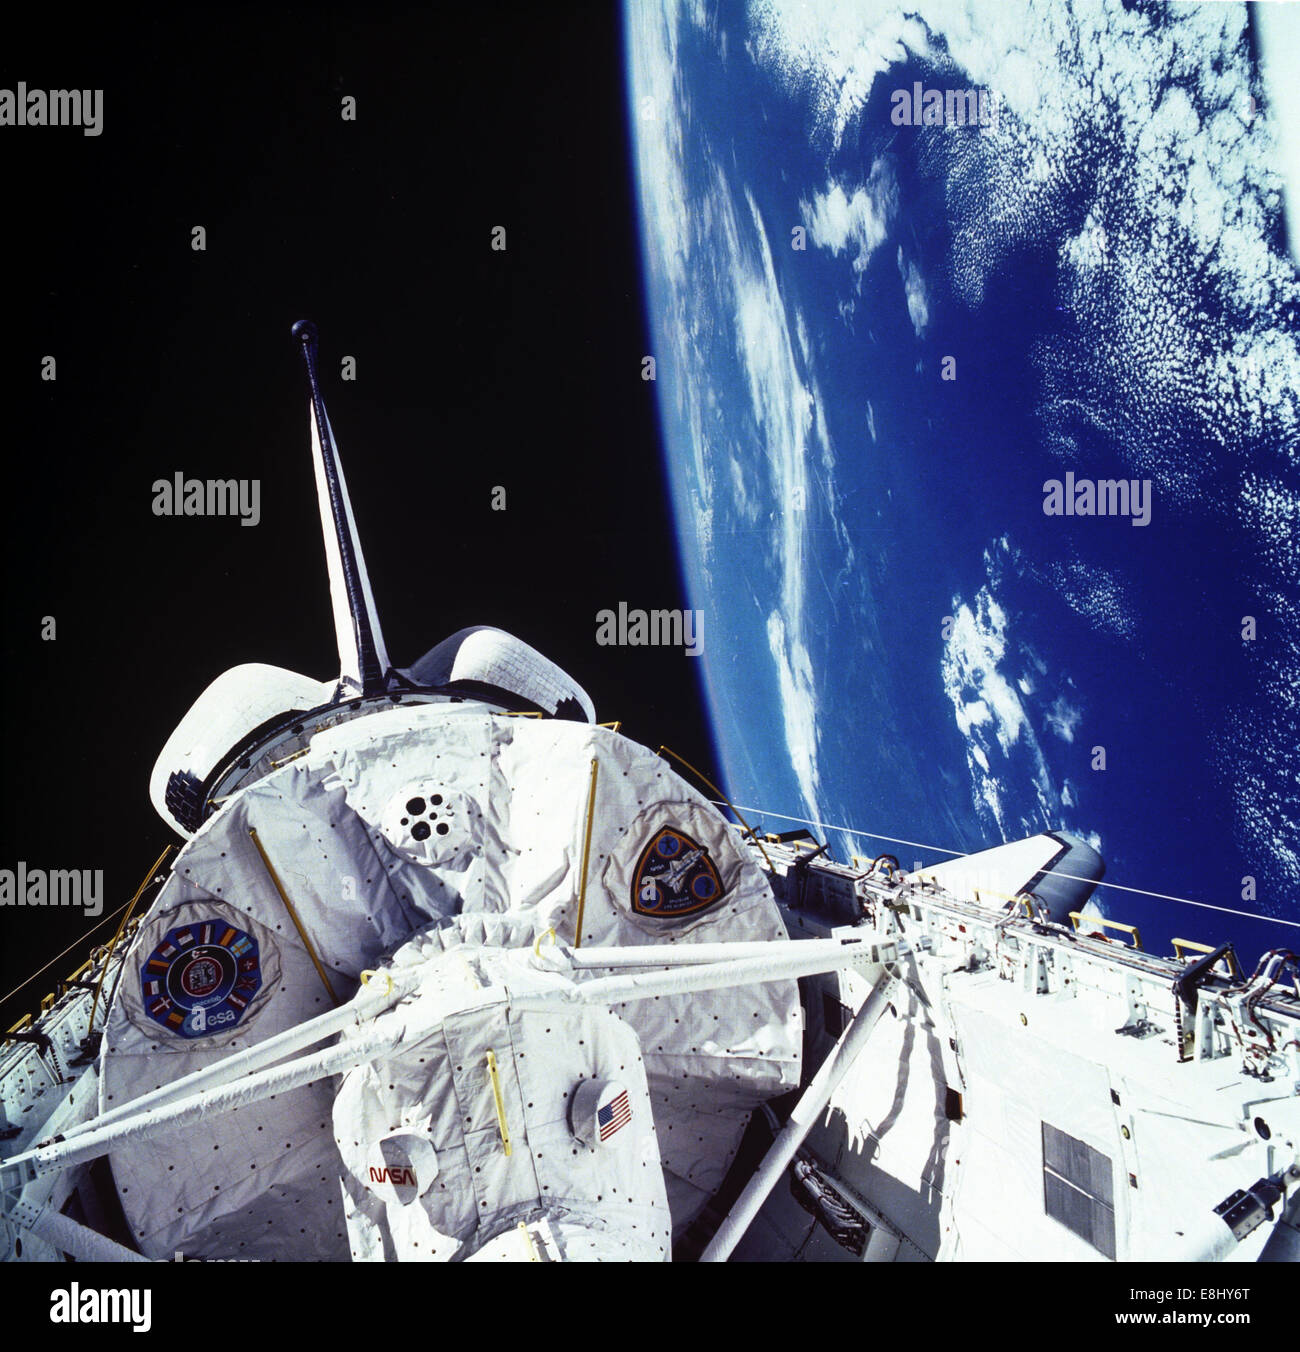 Spazio Life Science-1 (SLS-1), lanciato a bordo dello Space Shuttle Columbia Orbiter (STS-40) il 5 giugno 1995, è stato il primo Spacelab mi Foto Stock